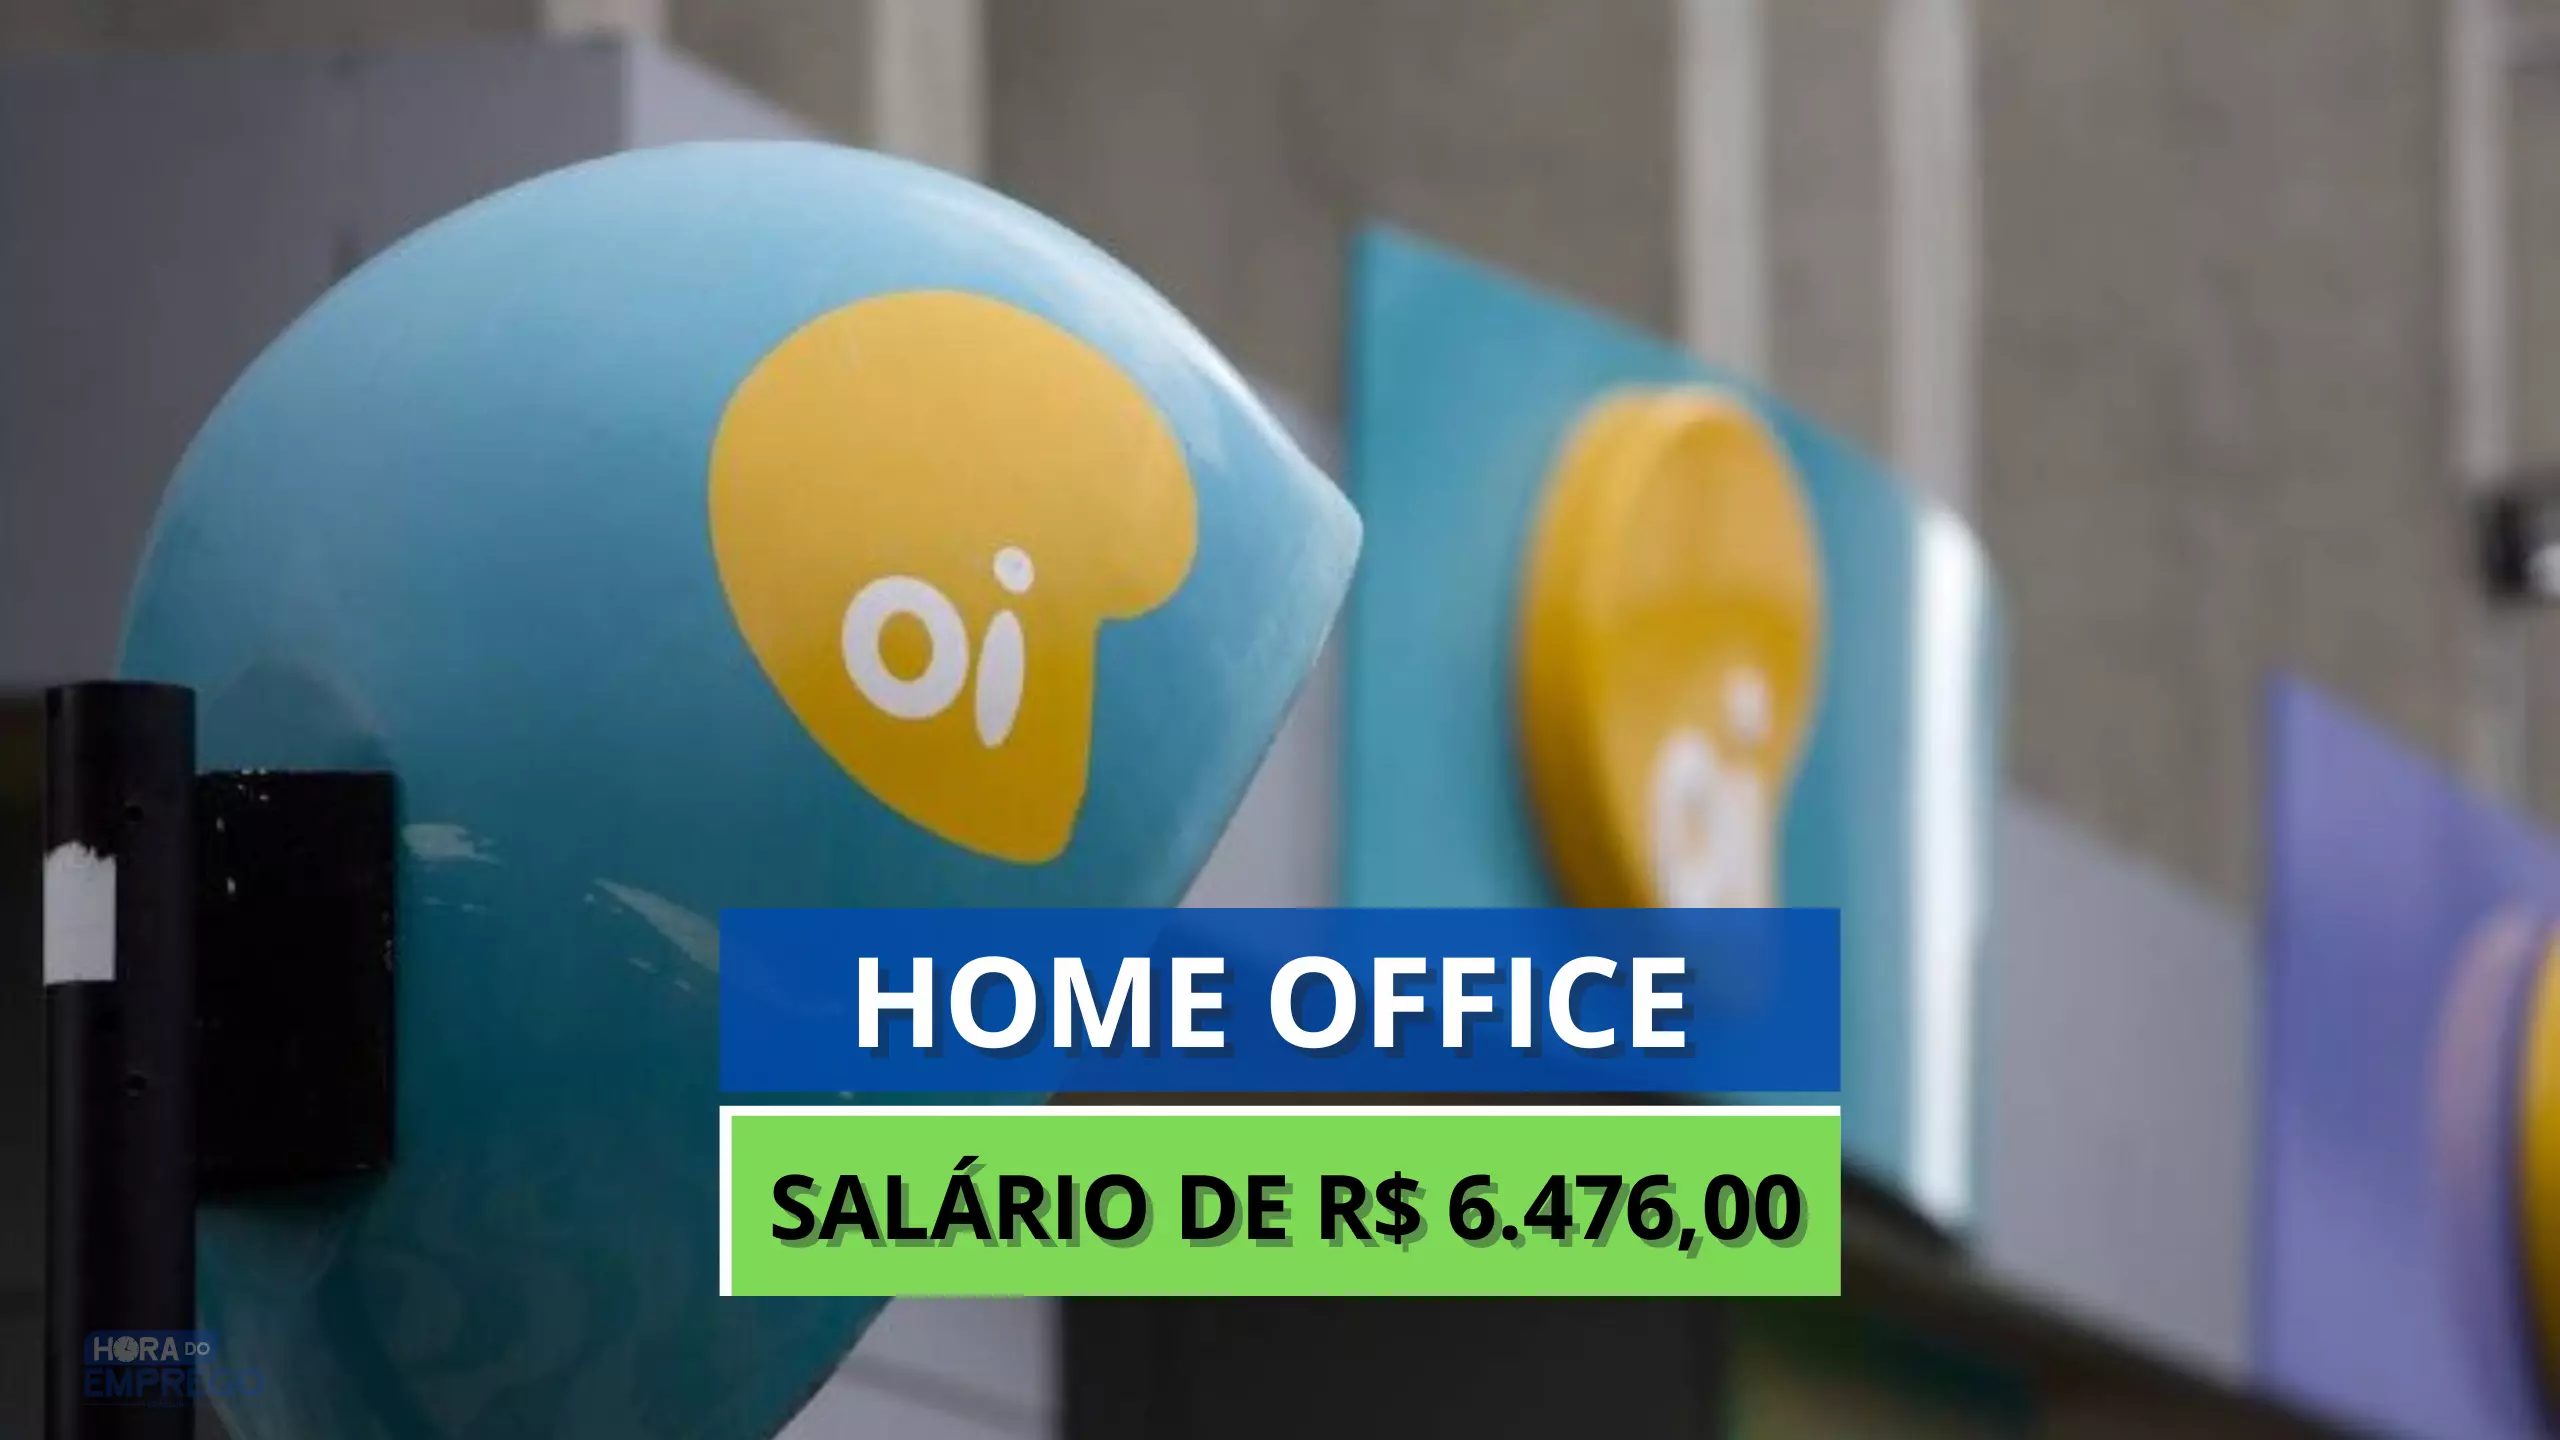 Operadora Oi abre vaga 100% HOME OFFICE para Especialista de Negócios com Salário de R$ 6.476,00